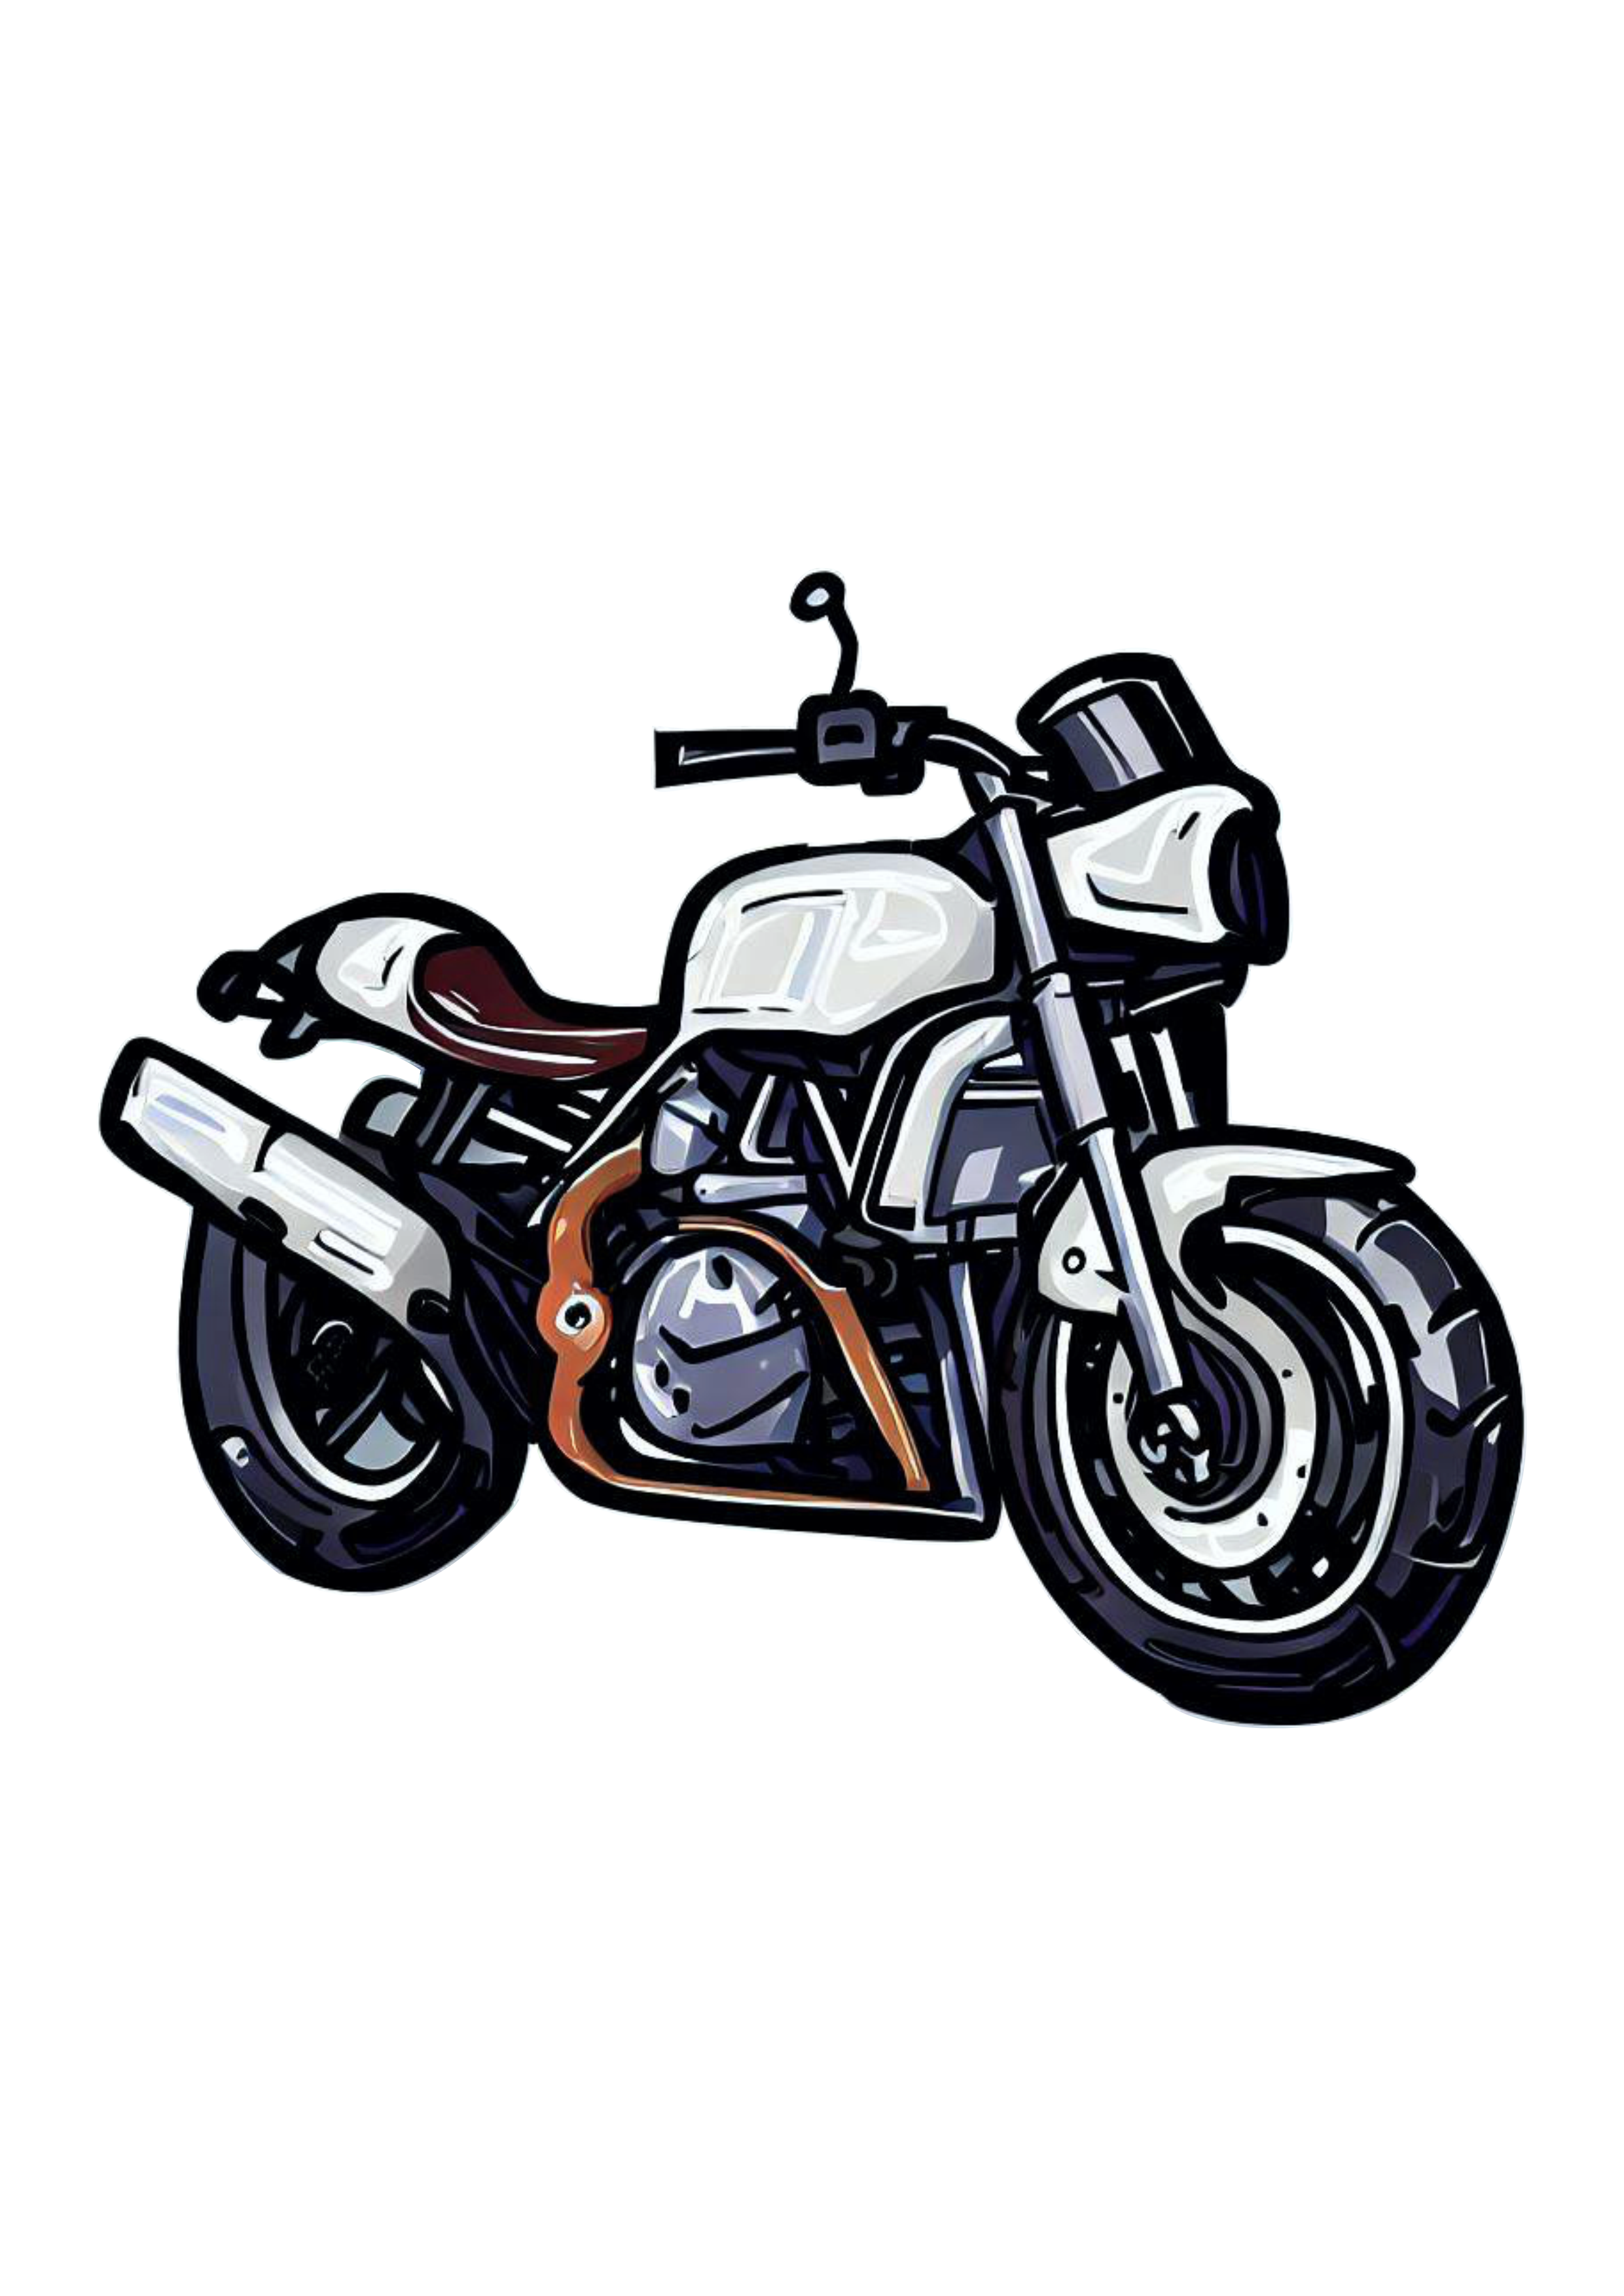 Moto esportiva desenho cartoon imagem conceitual veículo automotivo alta velocidade ilustração imagem sem fundo png